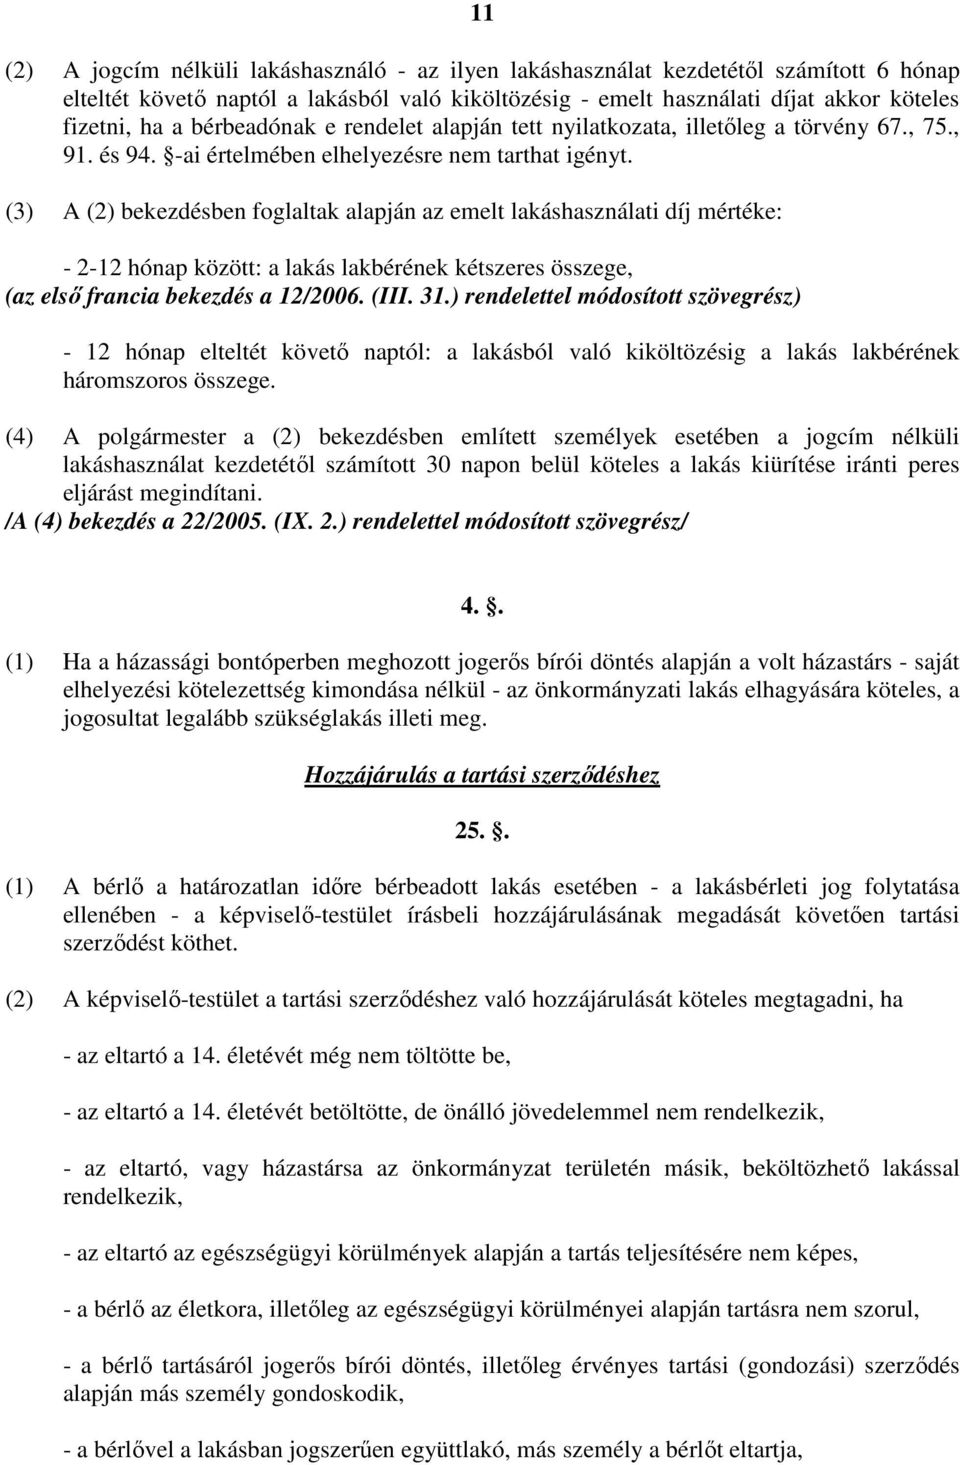 (3) A (2) bekezdésben foglaltak alapján az emelt lakáshasználati díj mértéke: - 2-12 hónap között: a lakás lakbérének kétszeres összege, (az elsı francia bekezdés a 12/2006. (III. 31.